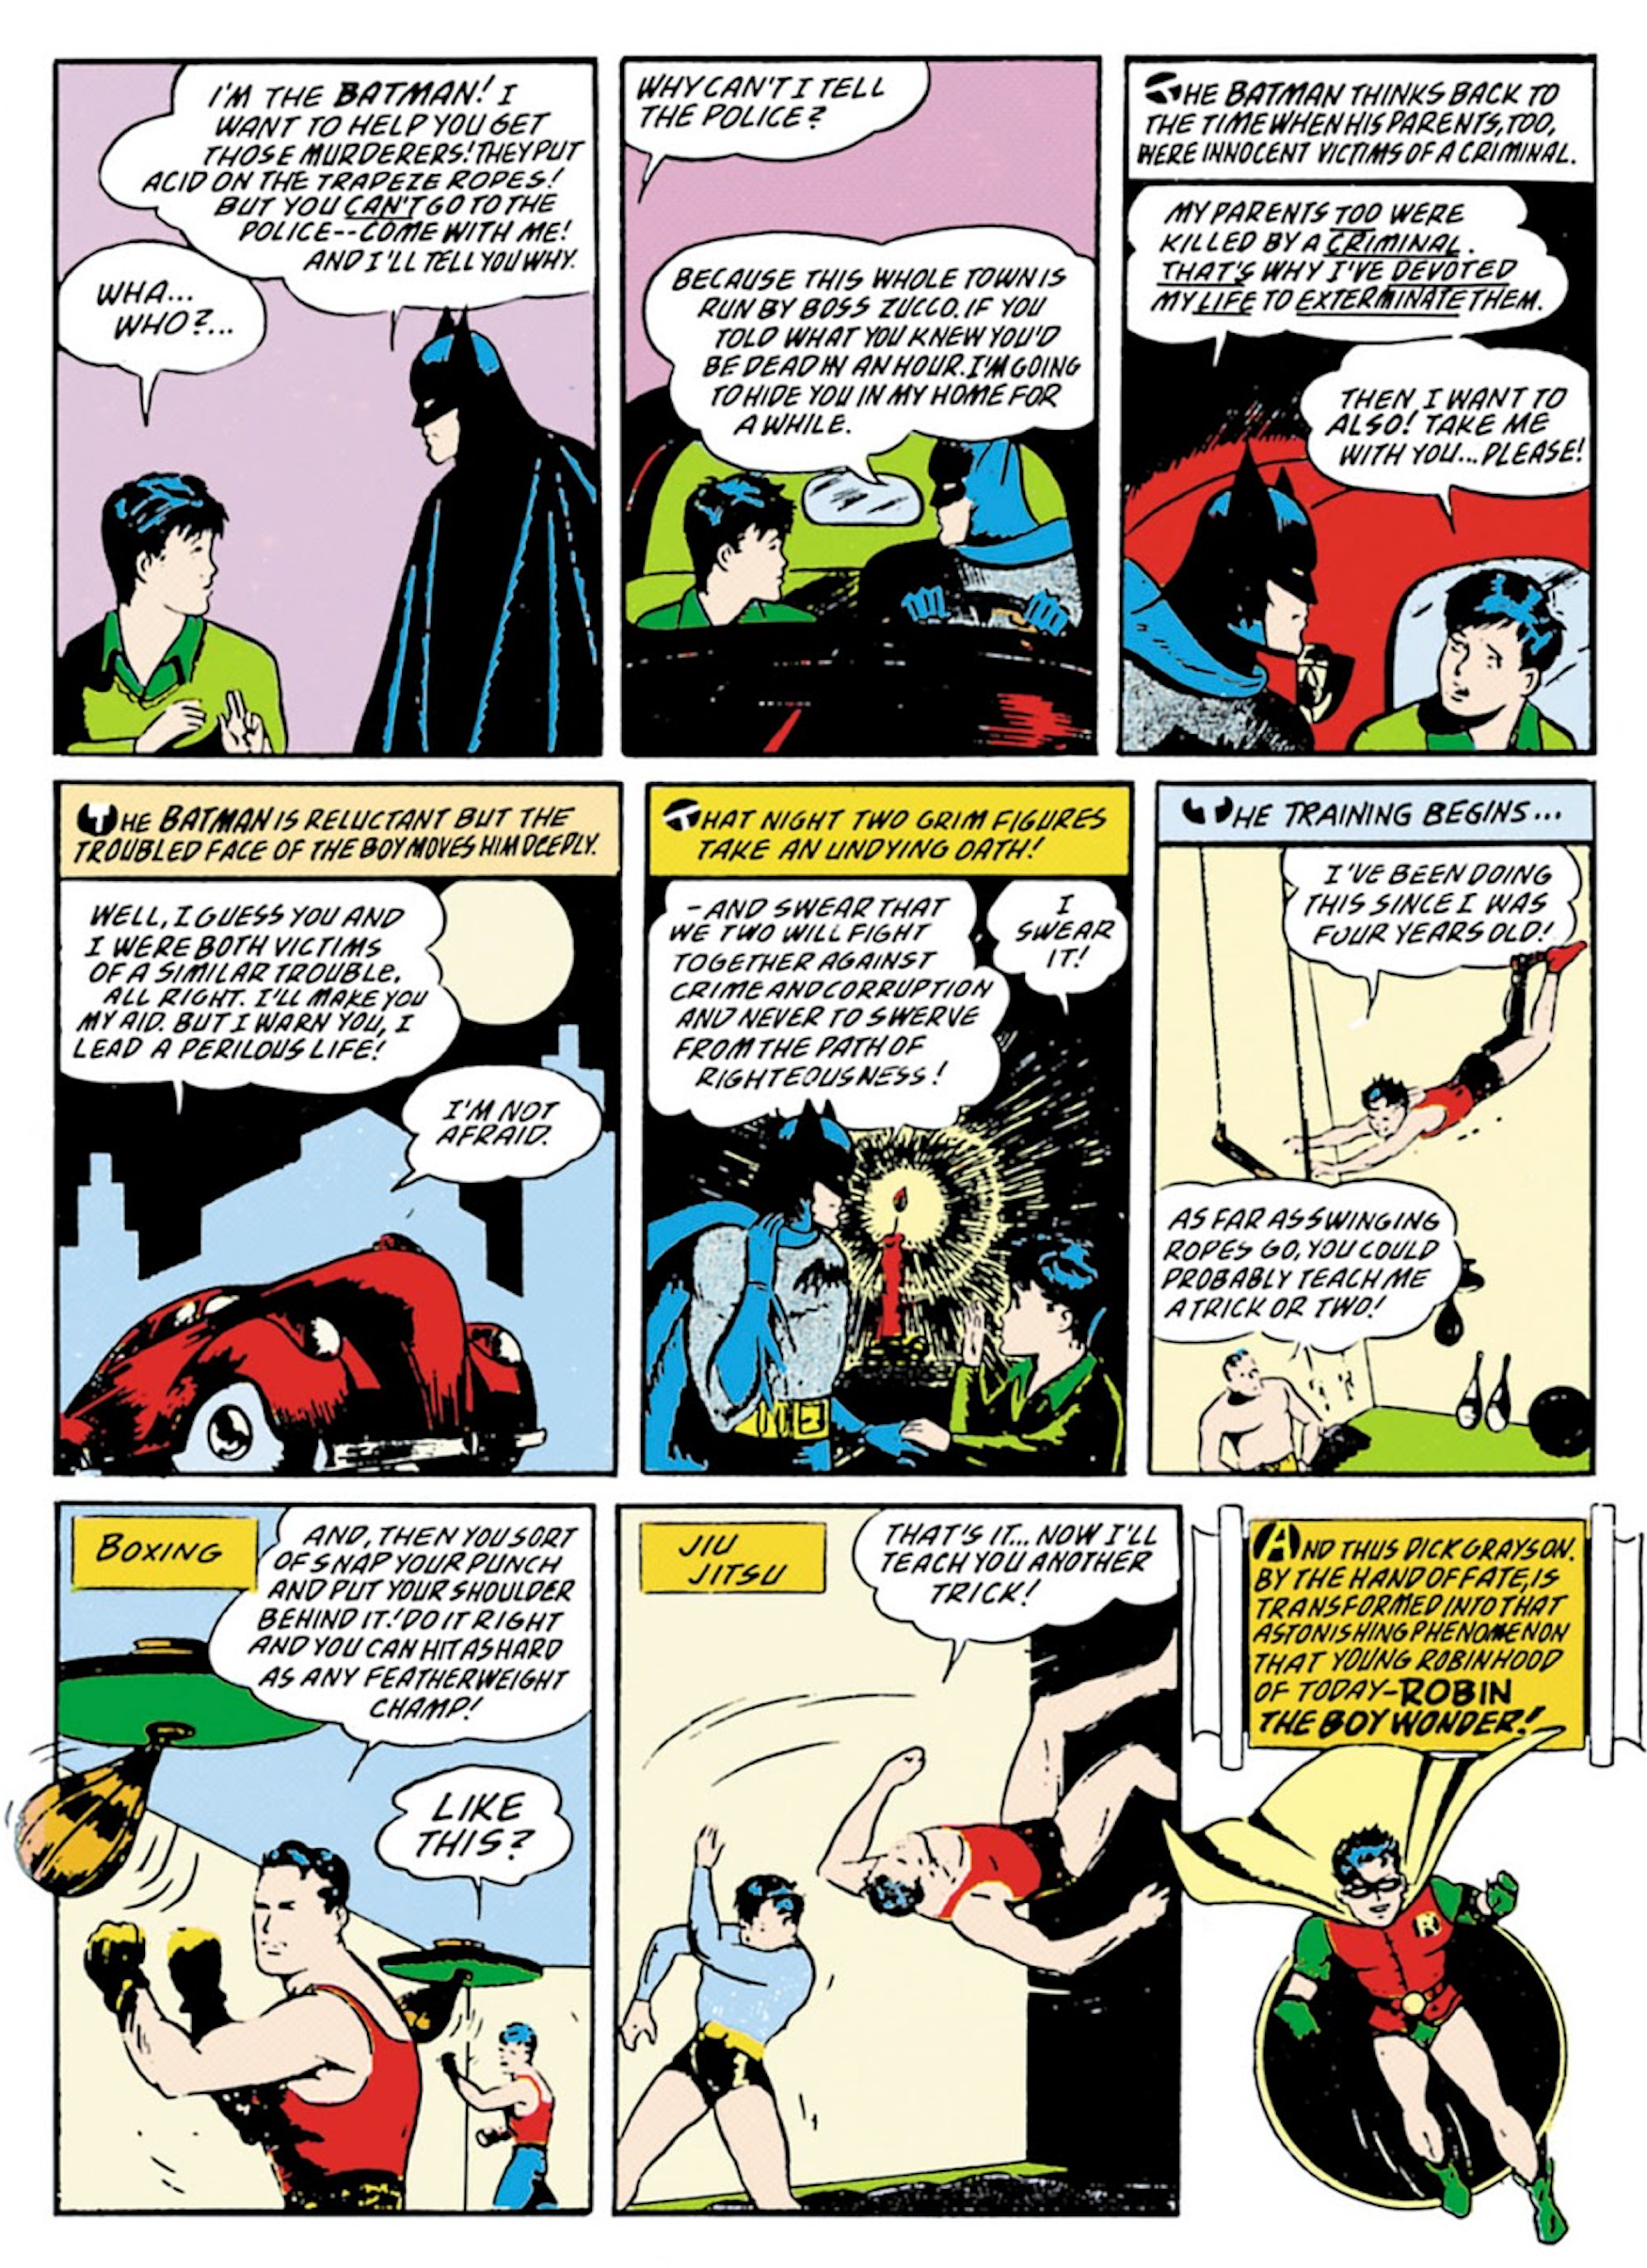 Batman meets Robin in Detective Comics